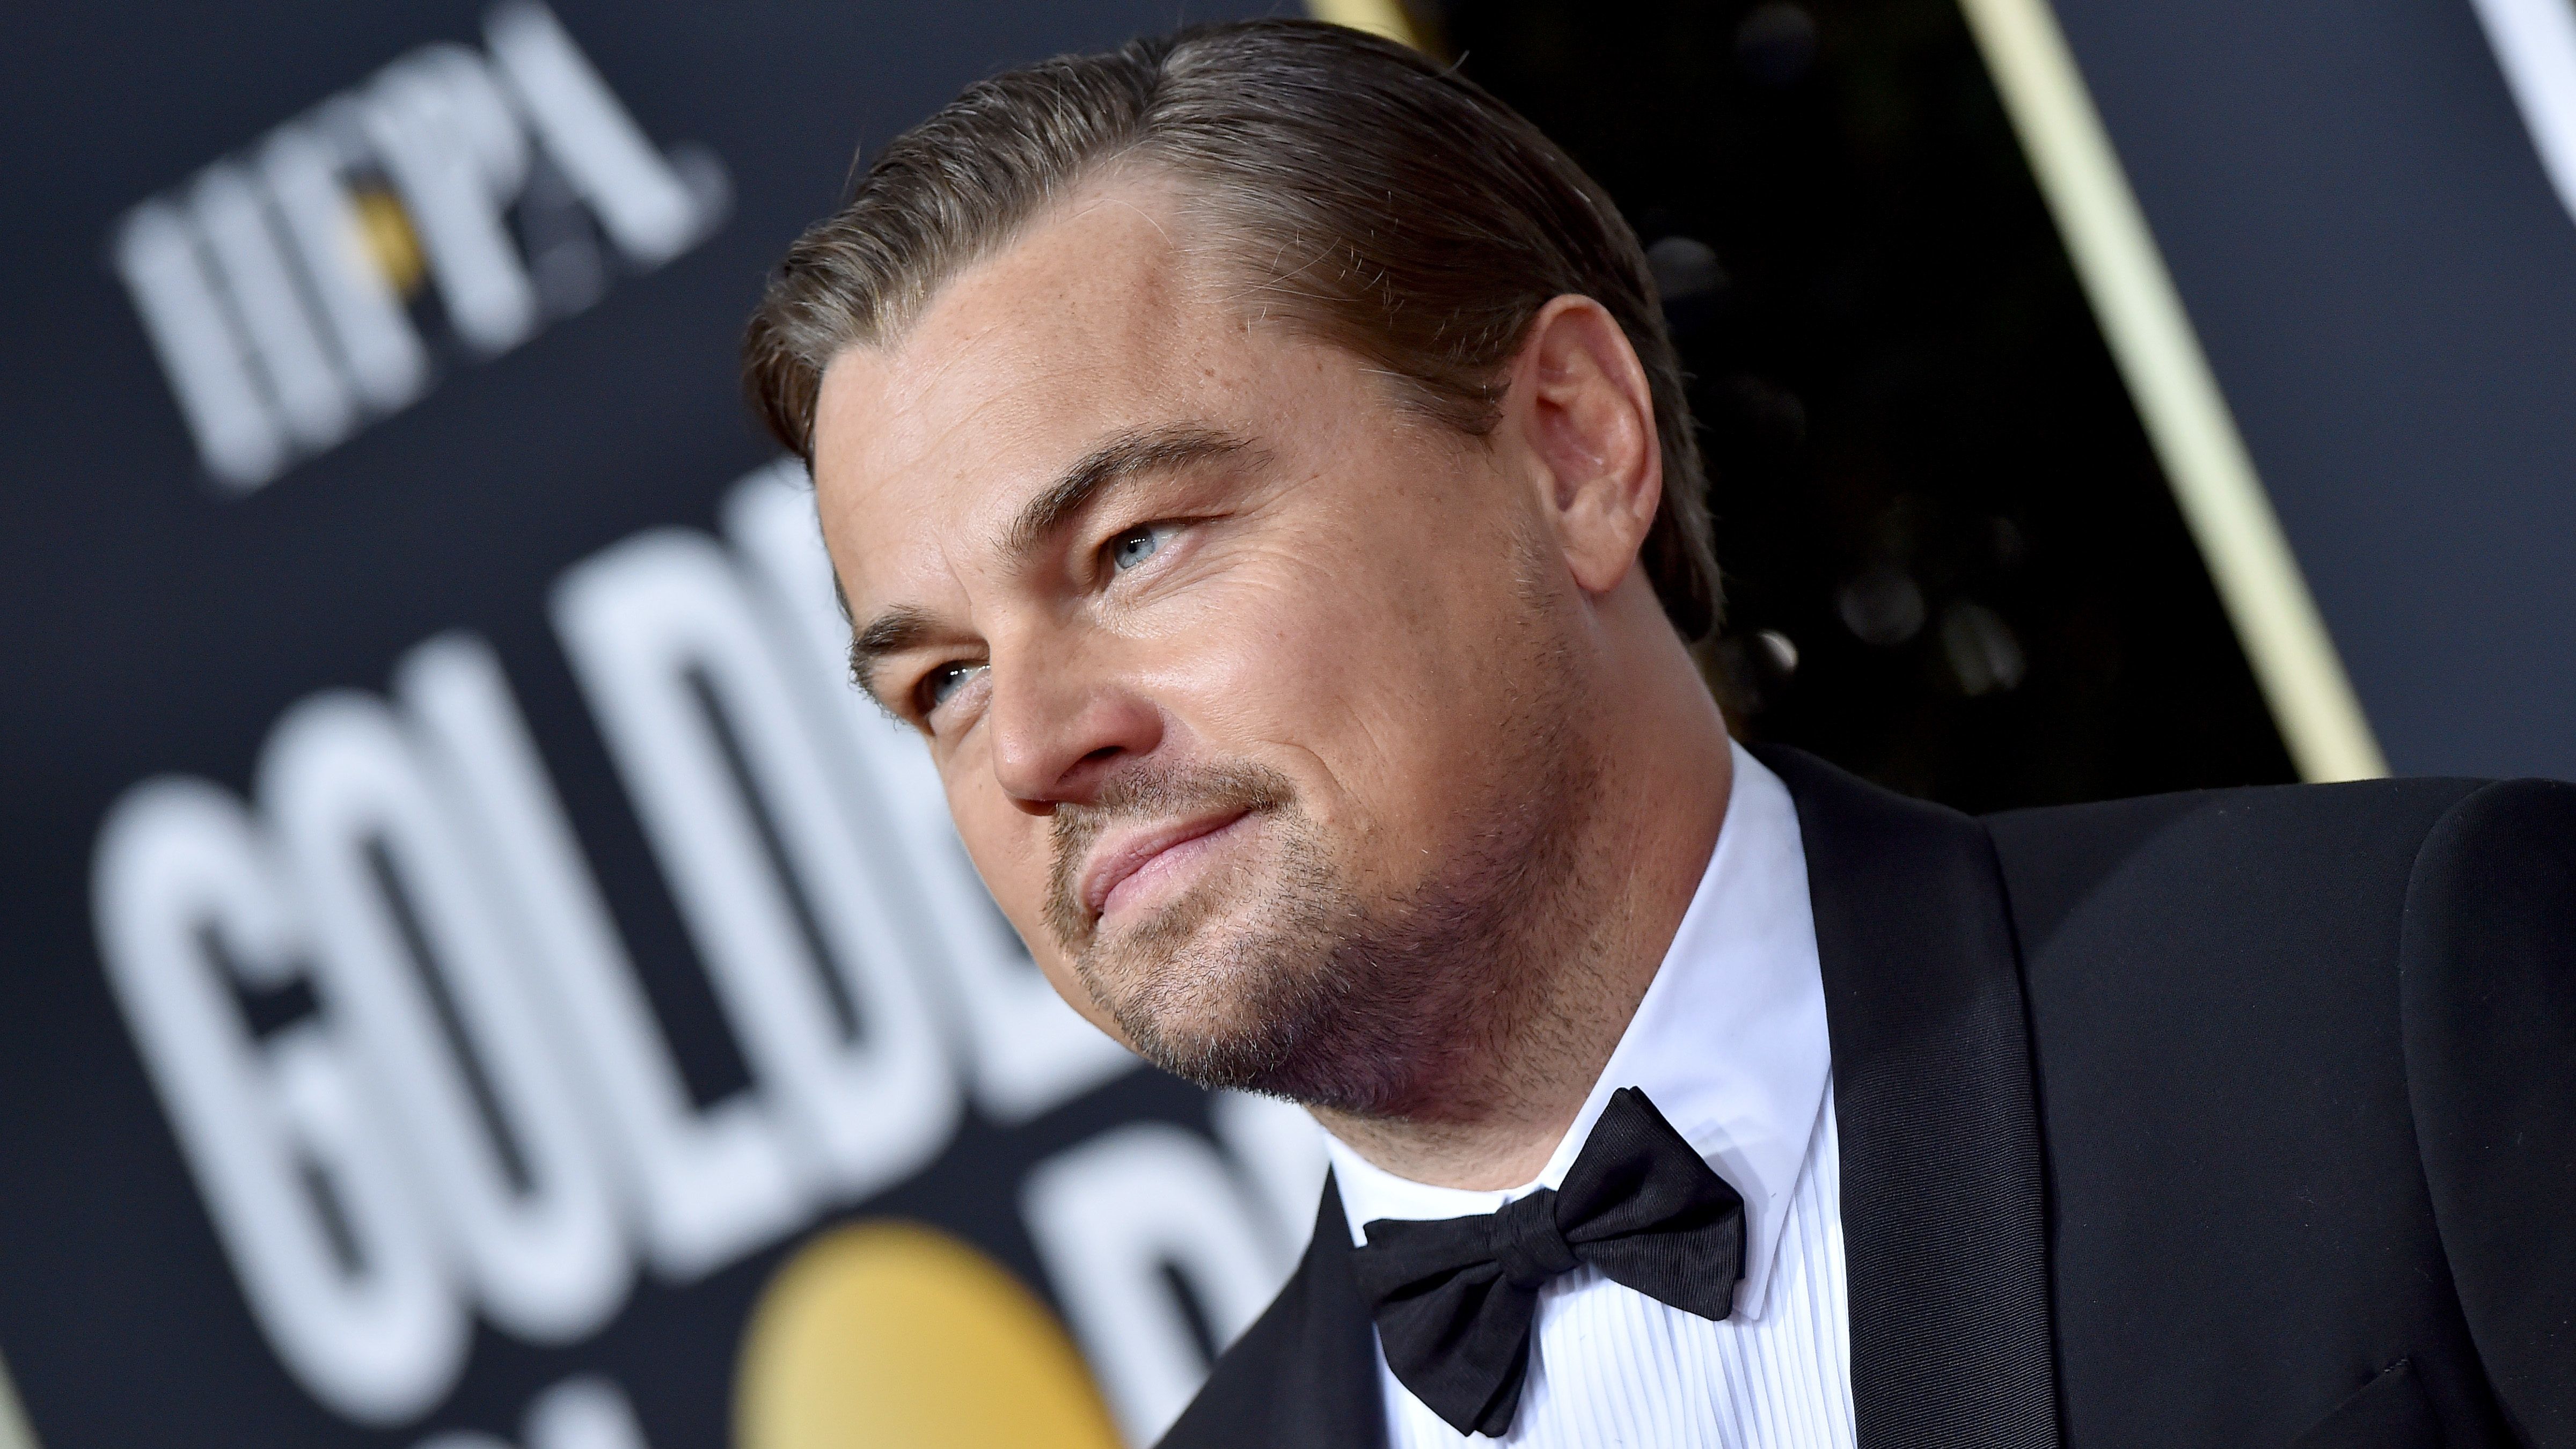 Leonardo DiCaprio hárommillió dollárt ajánlott fel az ausztrál tűzvész megfékezésére